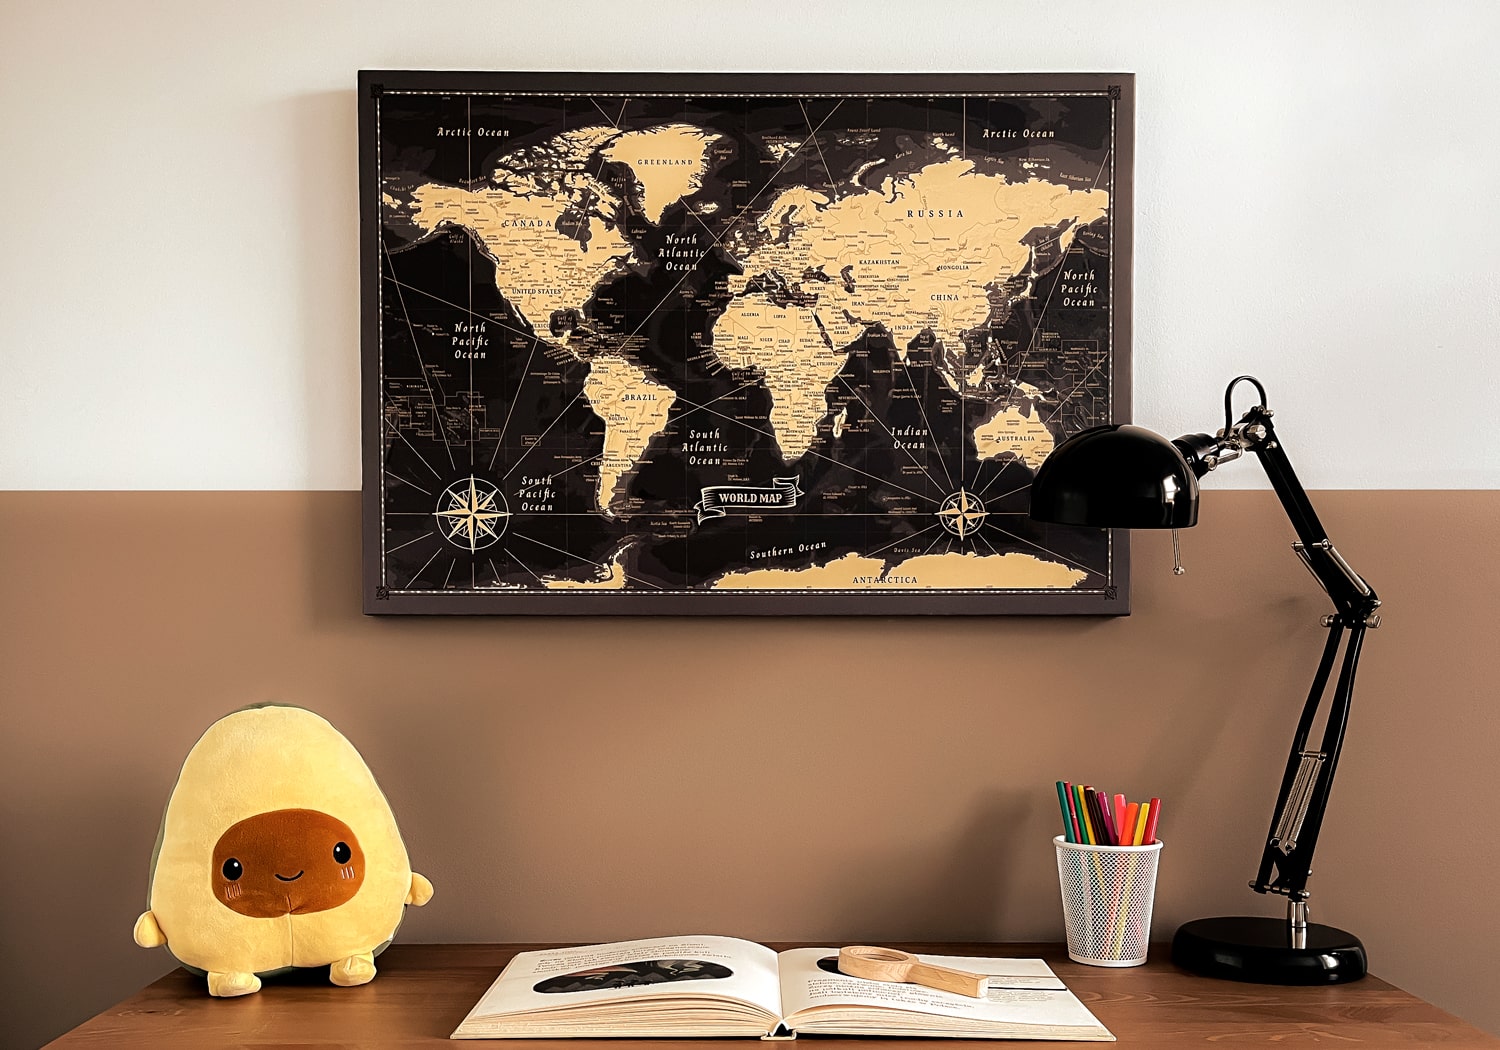 Ein gut organisiertes Arbeitszimmer mit einer Vintage Weltkarte Pinnwand in Schwarz und Gold an der Wand, begleitet von einem Plüsch-Avocado-Spielzeug, einer Leselampe und buntem Schreibwaren, inspirierend für Reiseplanung und Lernen.